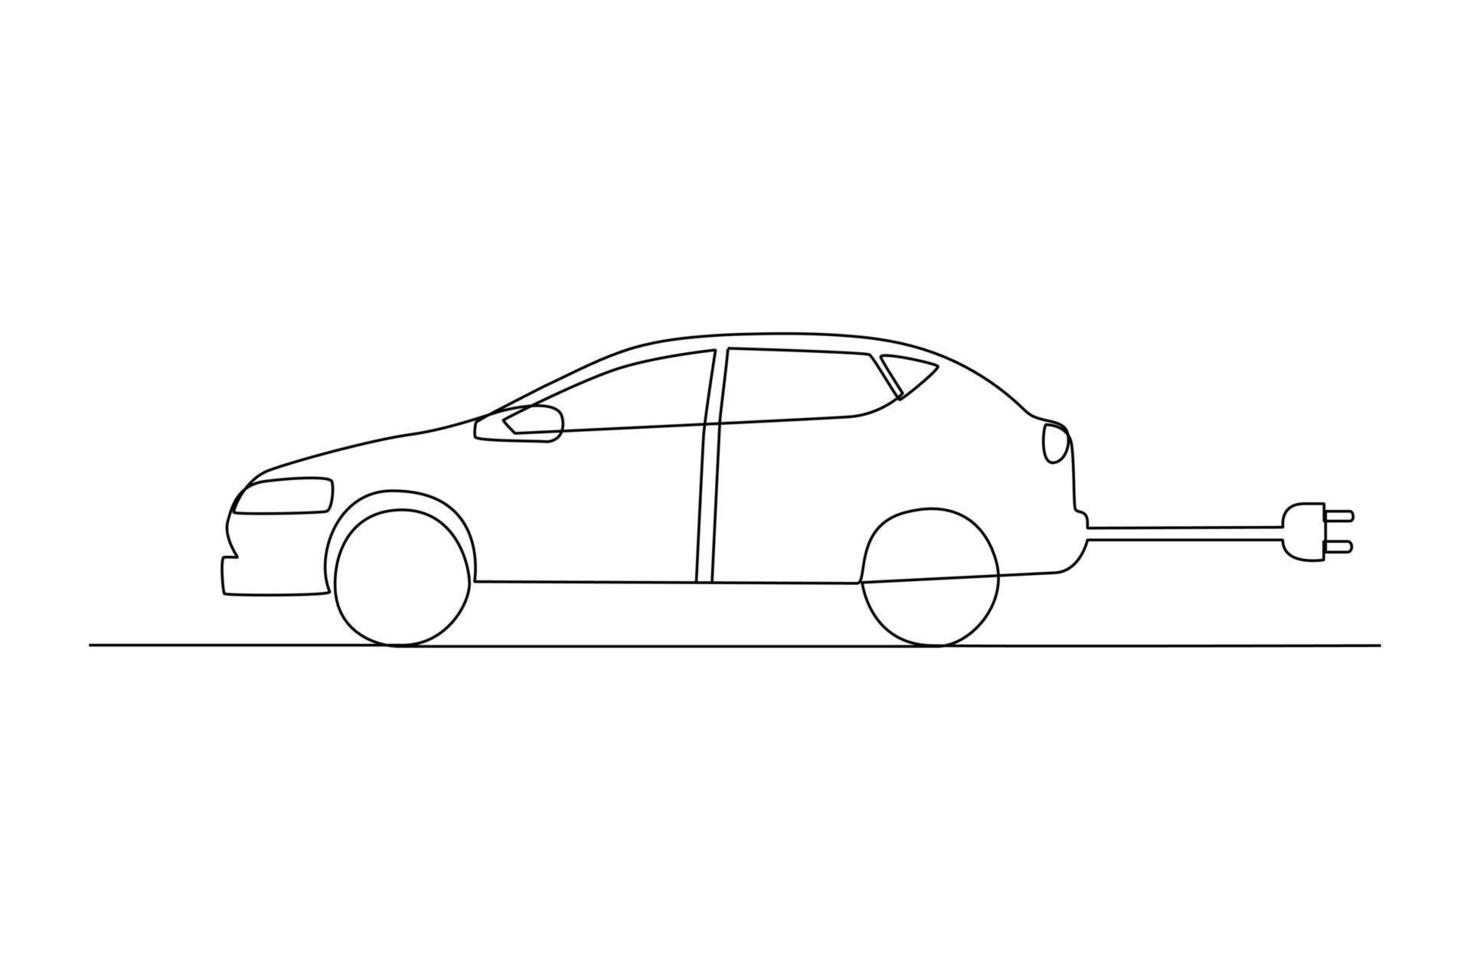 doorlopend een lijn tekening elektrisch auto met plug. elektrisch auto concept. single lijn trek ontwerp vector grafisch illustratie.